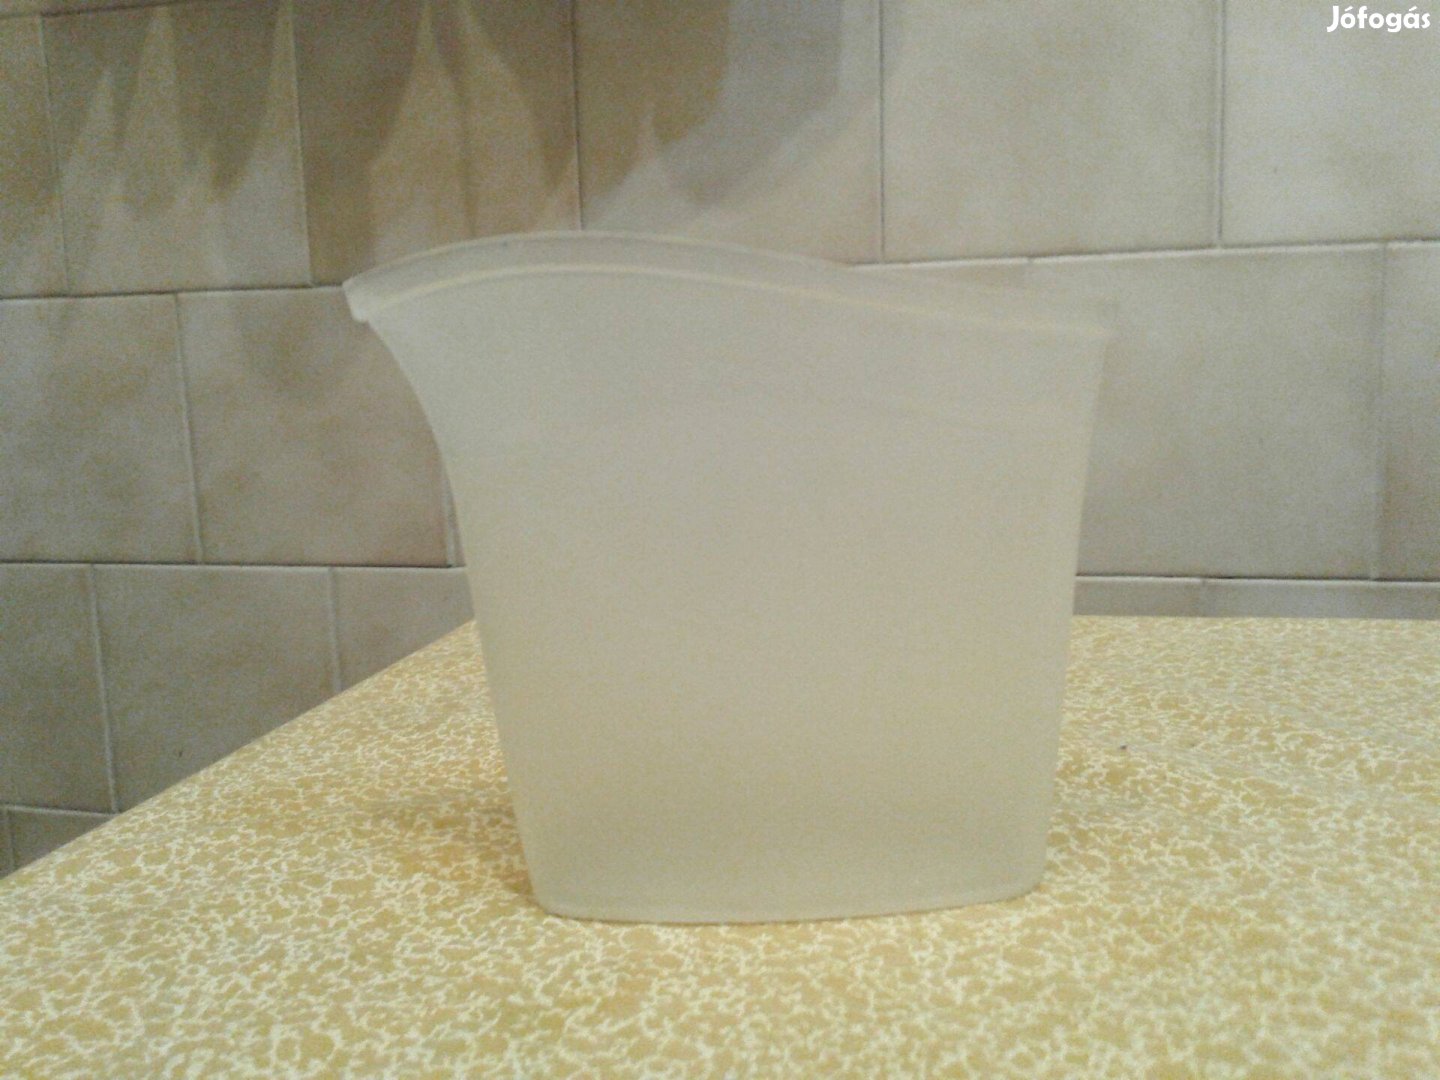 Műanyag adagoló /mosópor vagy víz/ kis pohár